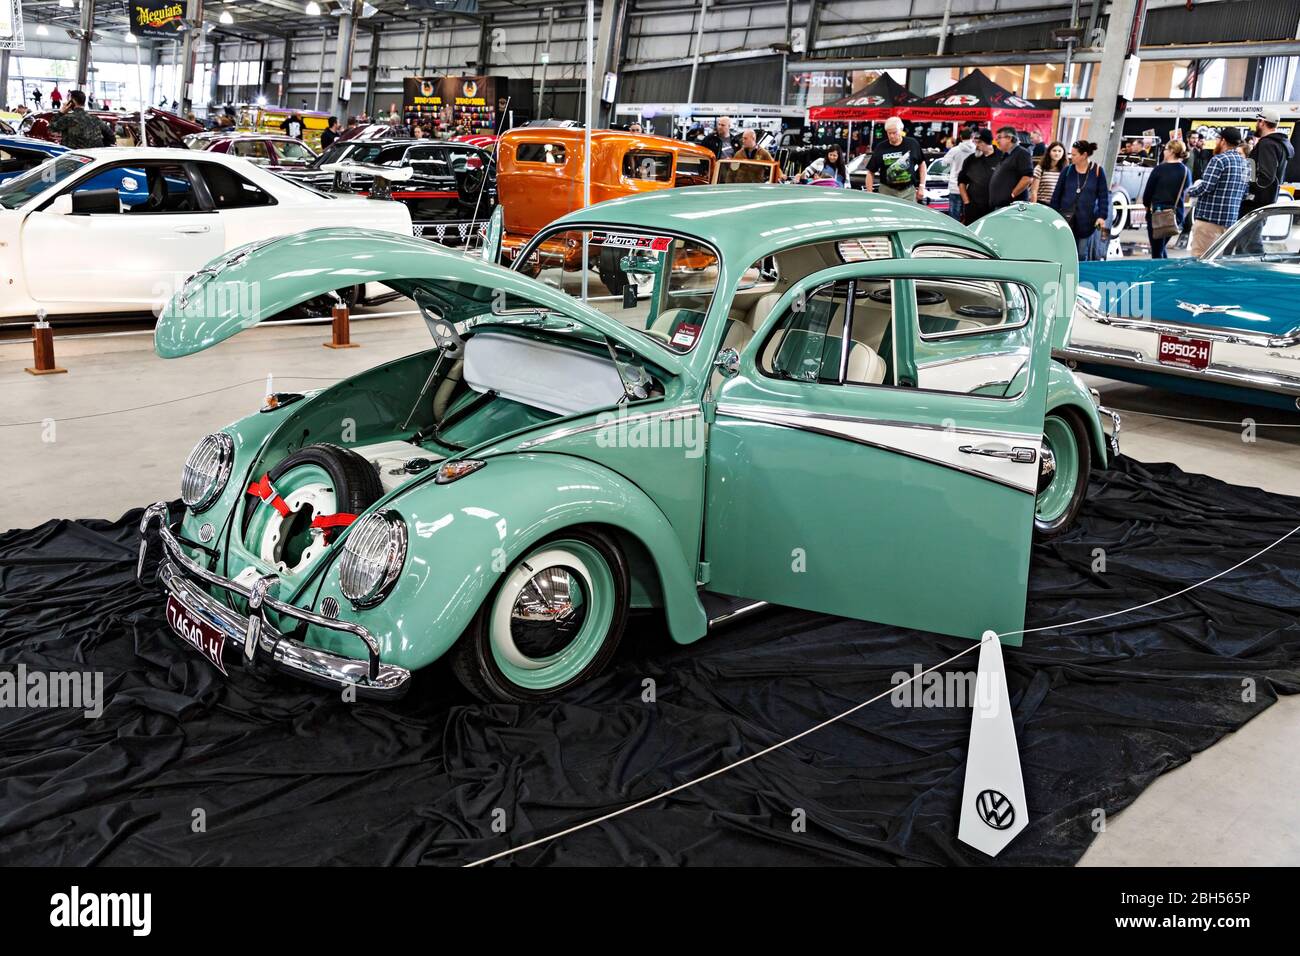 Automobiles / un classique du modèle Volkswagen des années 1960 ( Beetle ) présenté lors d'un spectacle automobile à Melbourne Victoria Australie. Banque D'Images